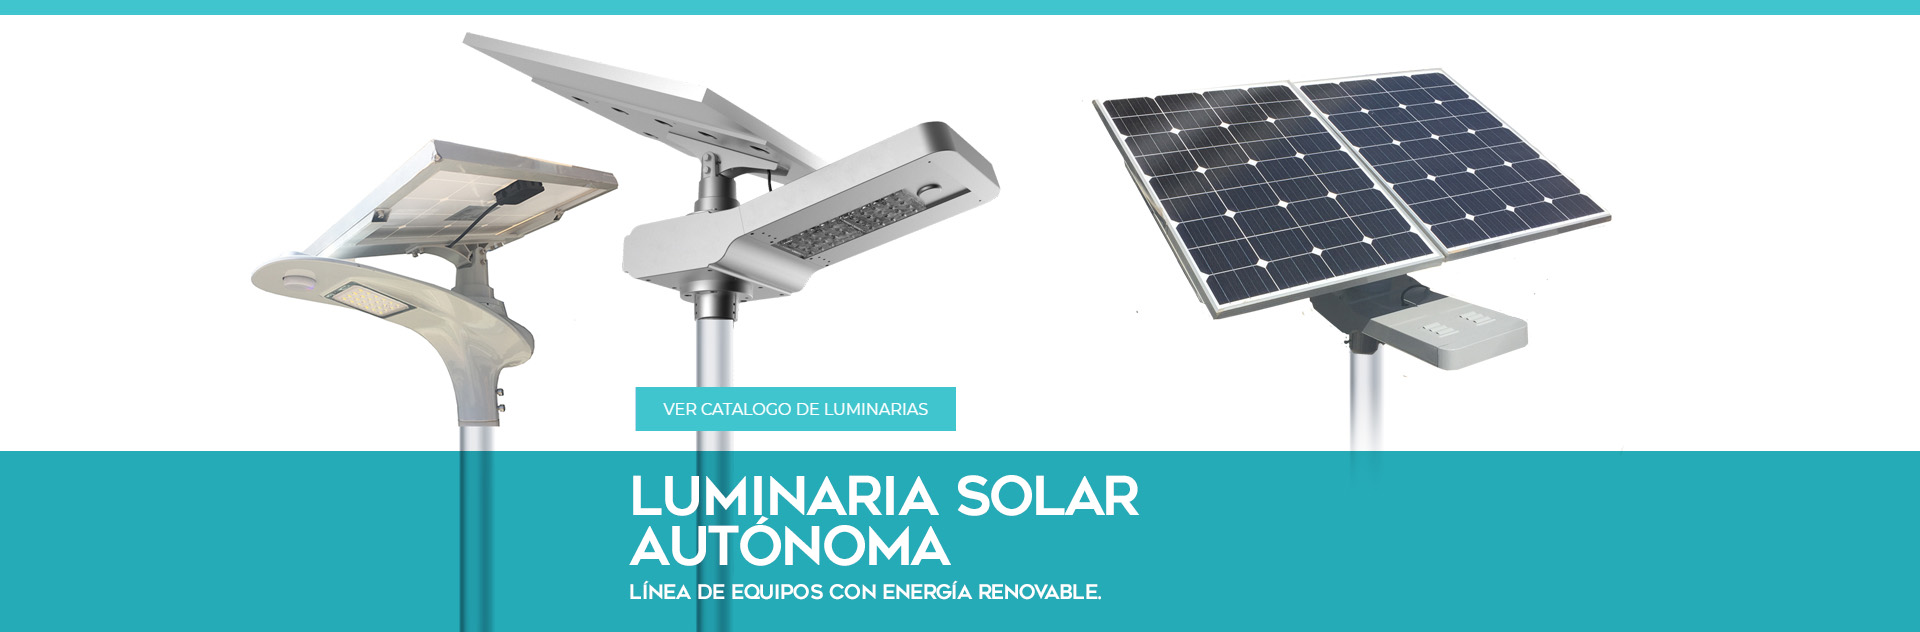 Luminaria Solar Autonoma